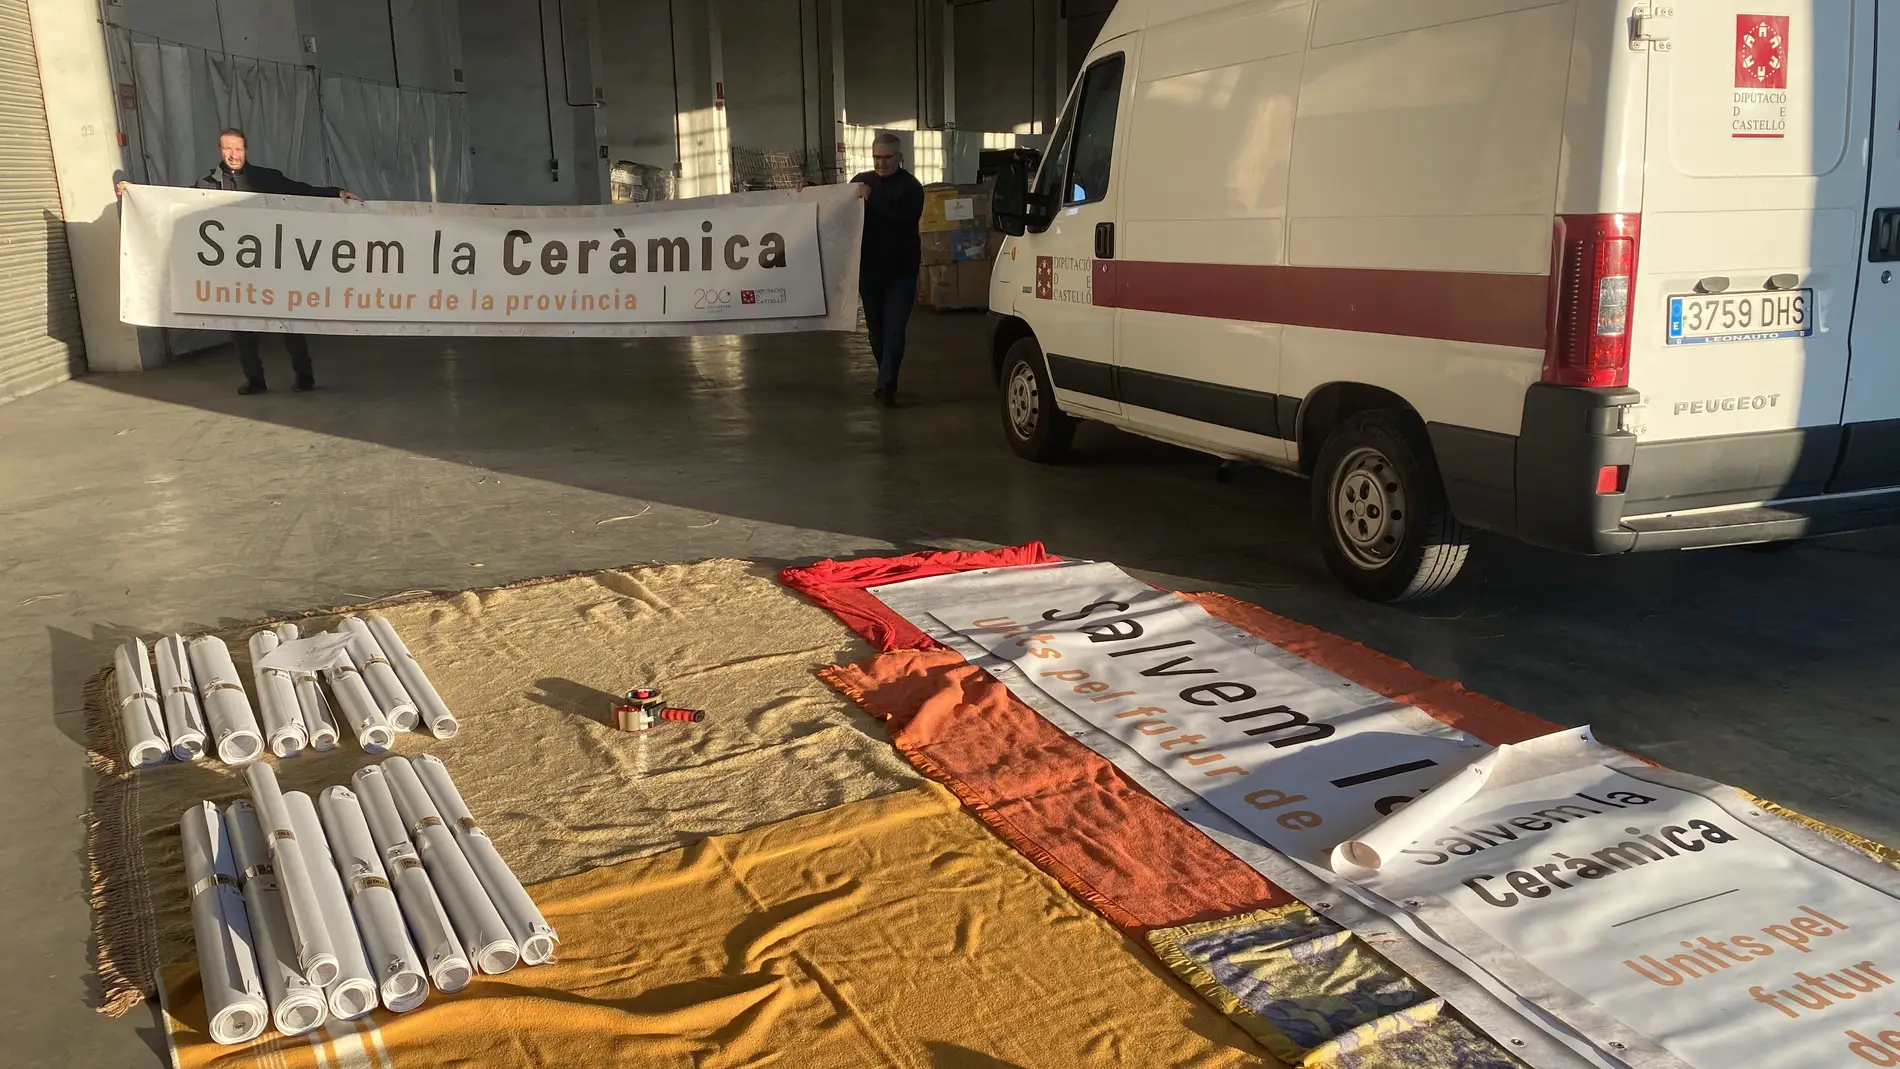 La Diputación reparte las pancartas de ‘Salvem la ceràmica’ a los municipios del clúster azulejero 